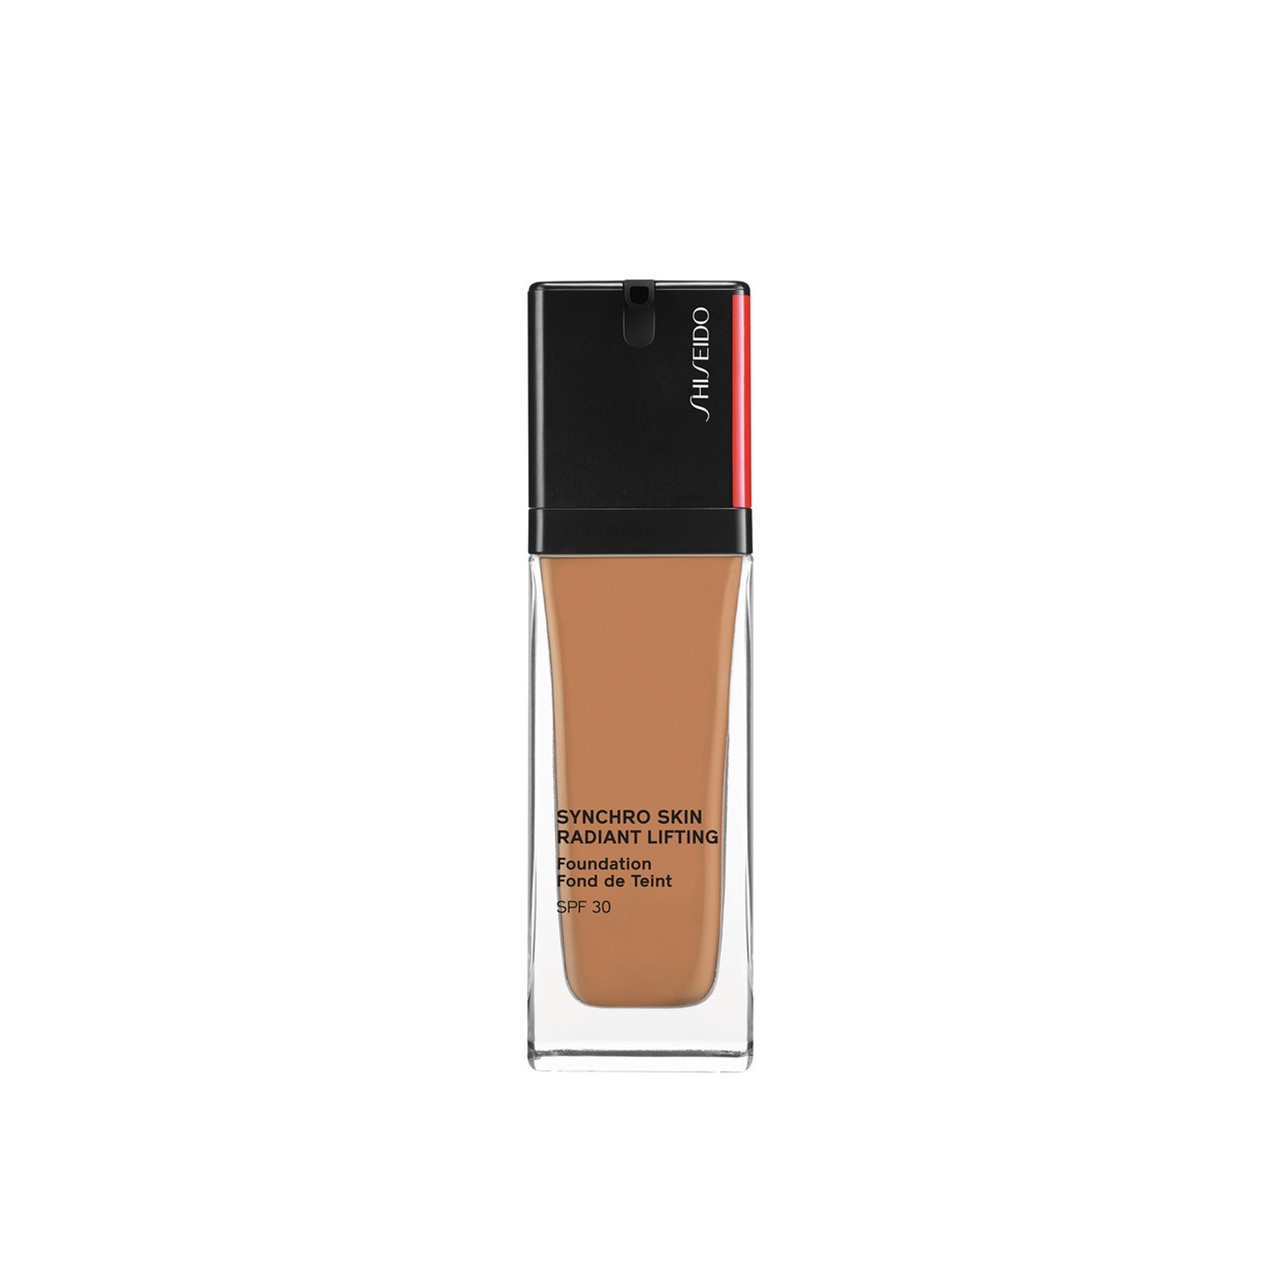 Shiseido Synchro Skin Radiant Lifting Foundation SPF30 410 Sunstone 30ml (1.01fl oz)